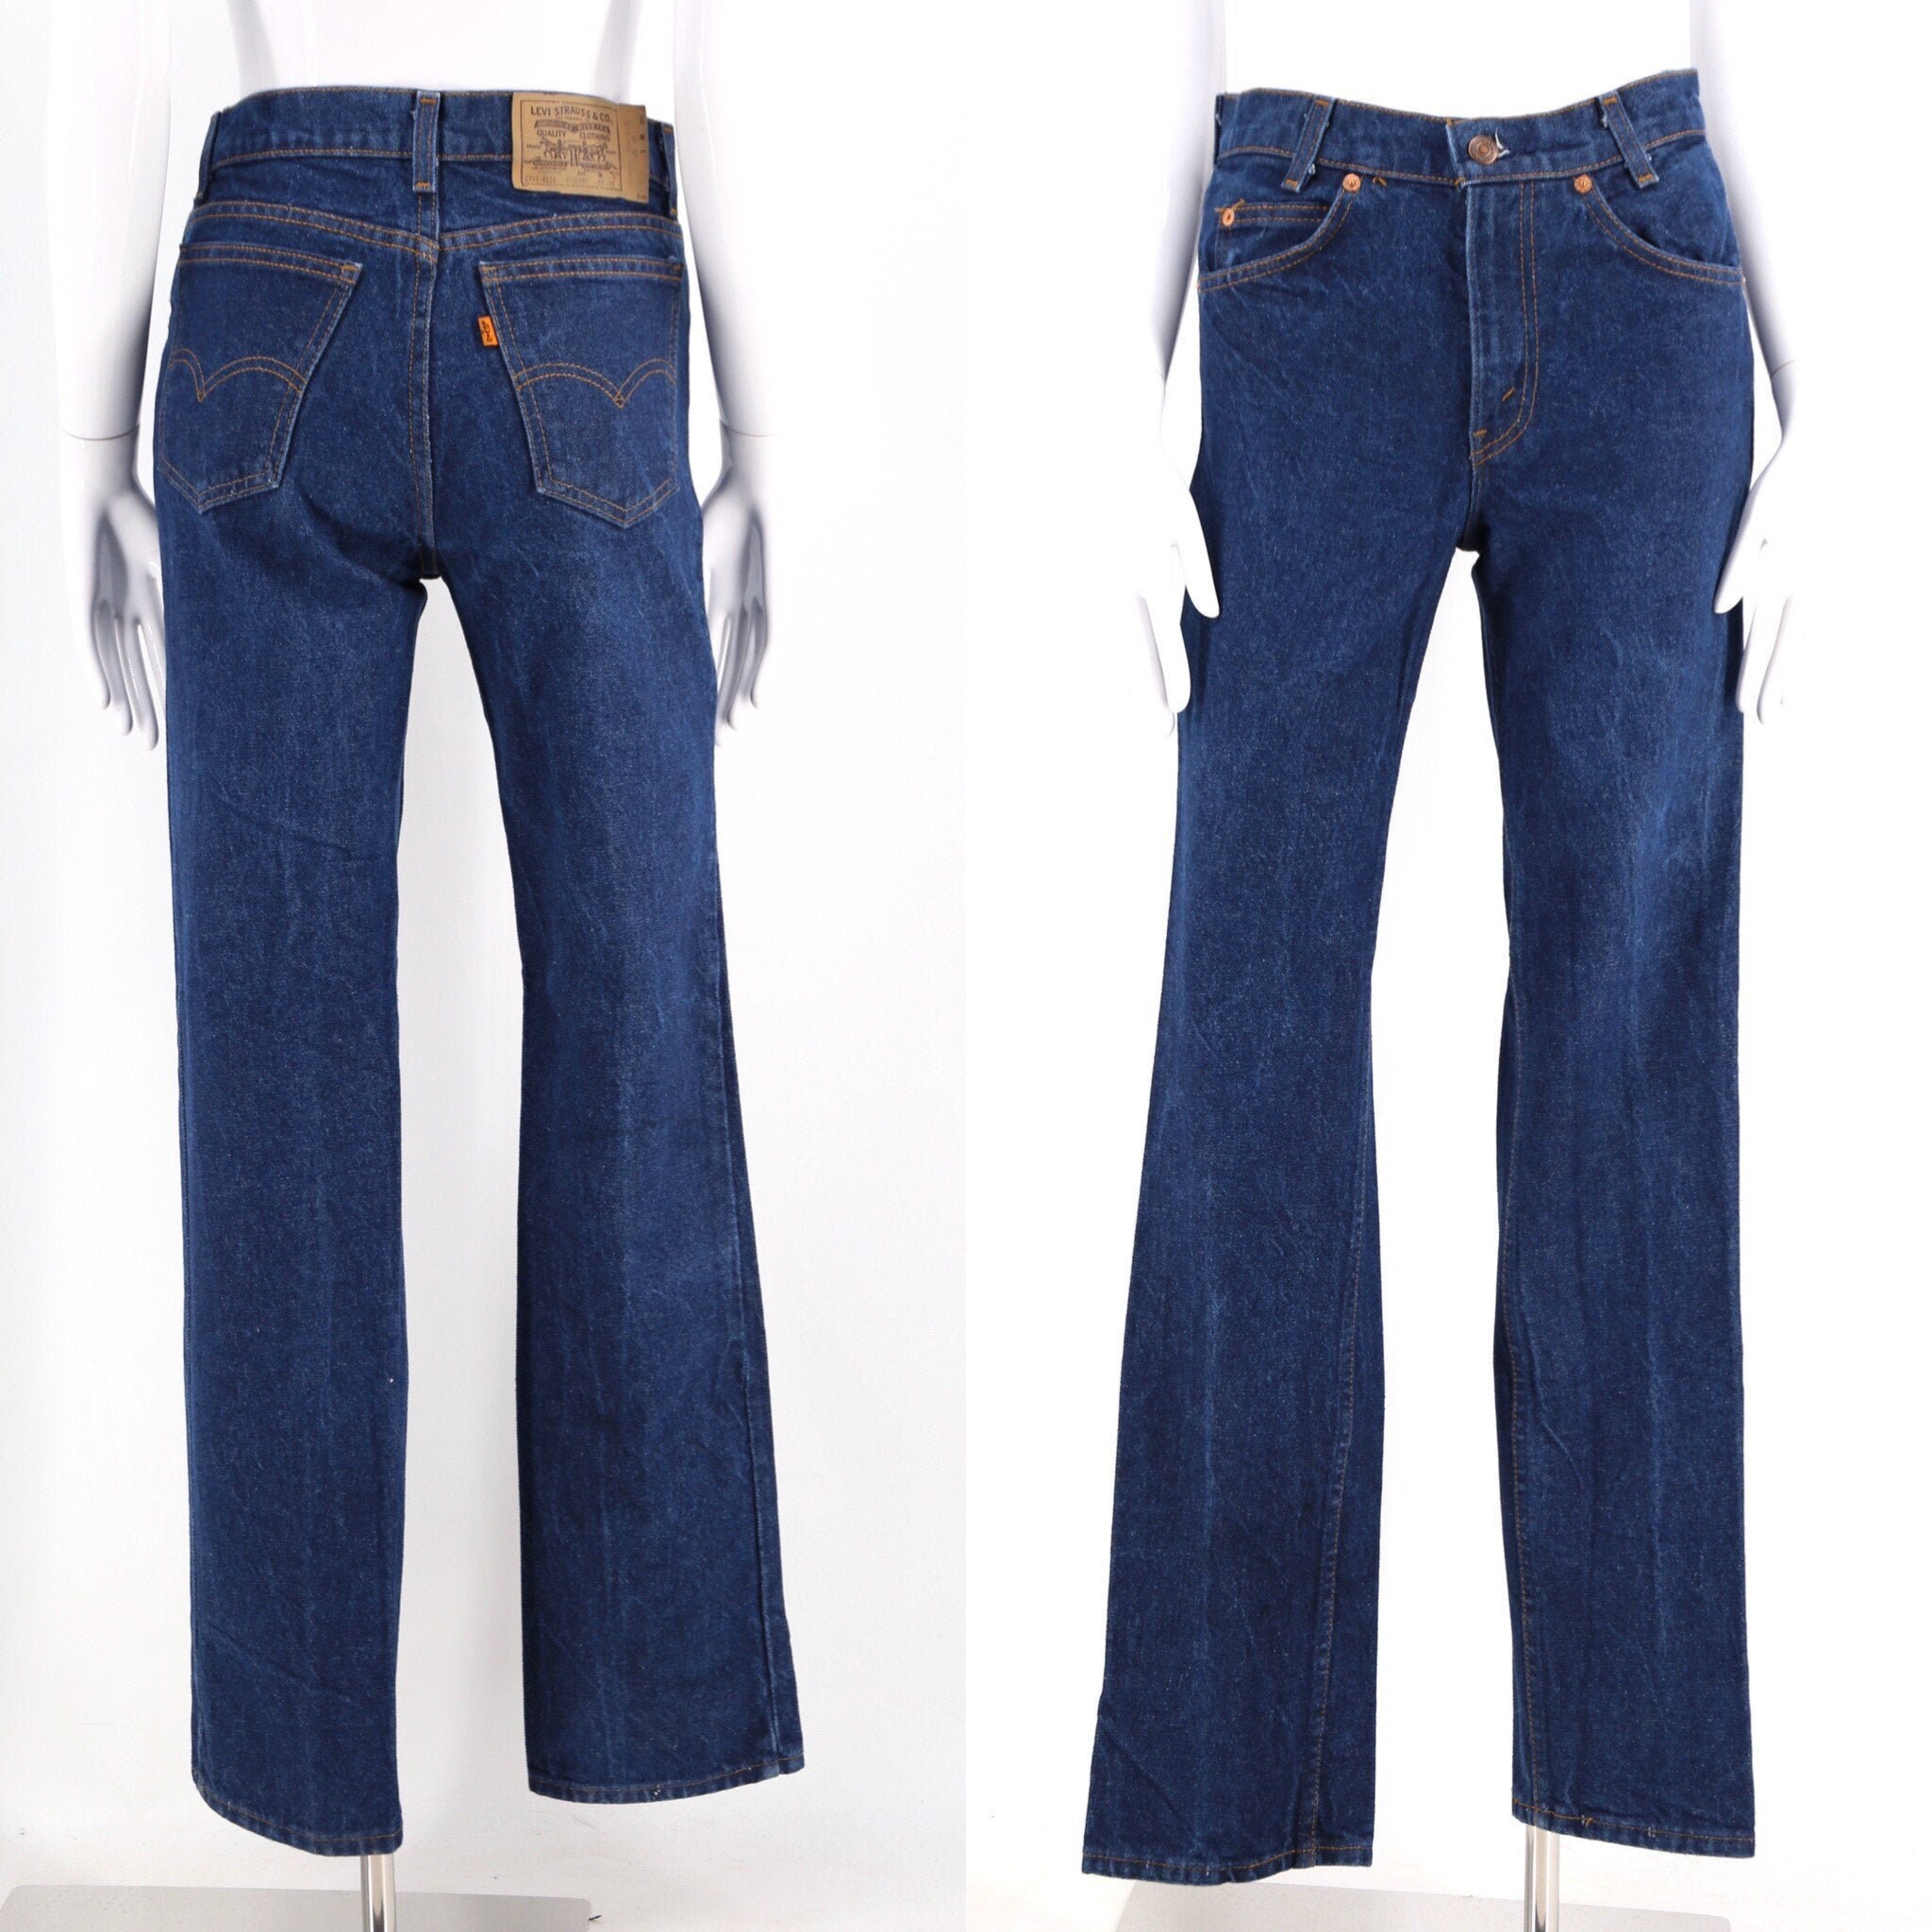 70s LEVIS 718 Orange Tab fit jeans 27 / vintage 1970s medium wash sexy fit sz 2-4